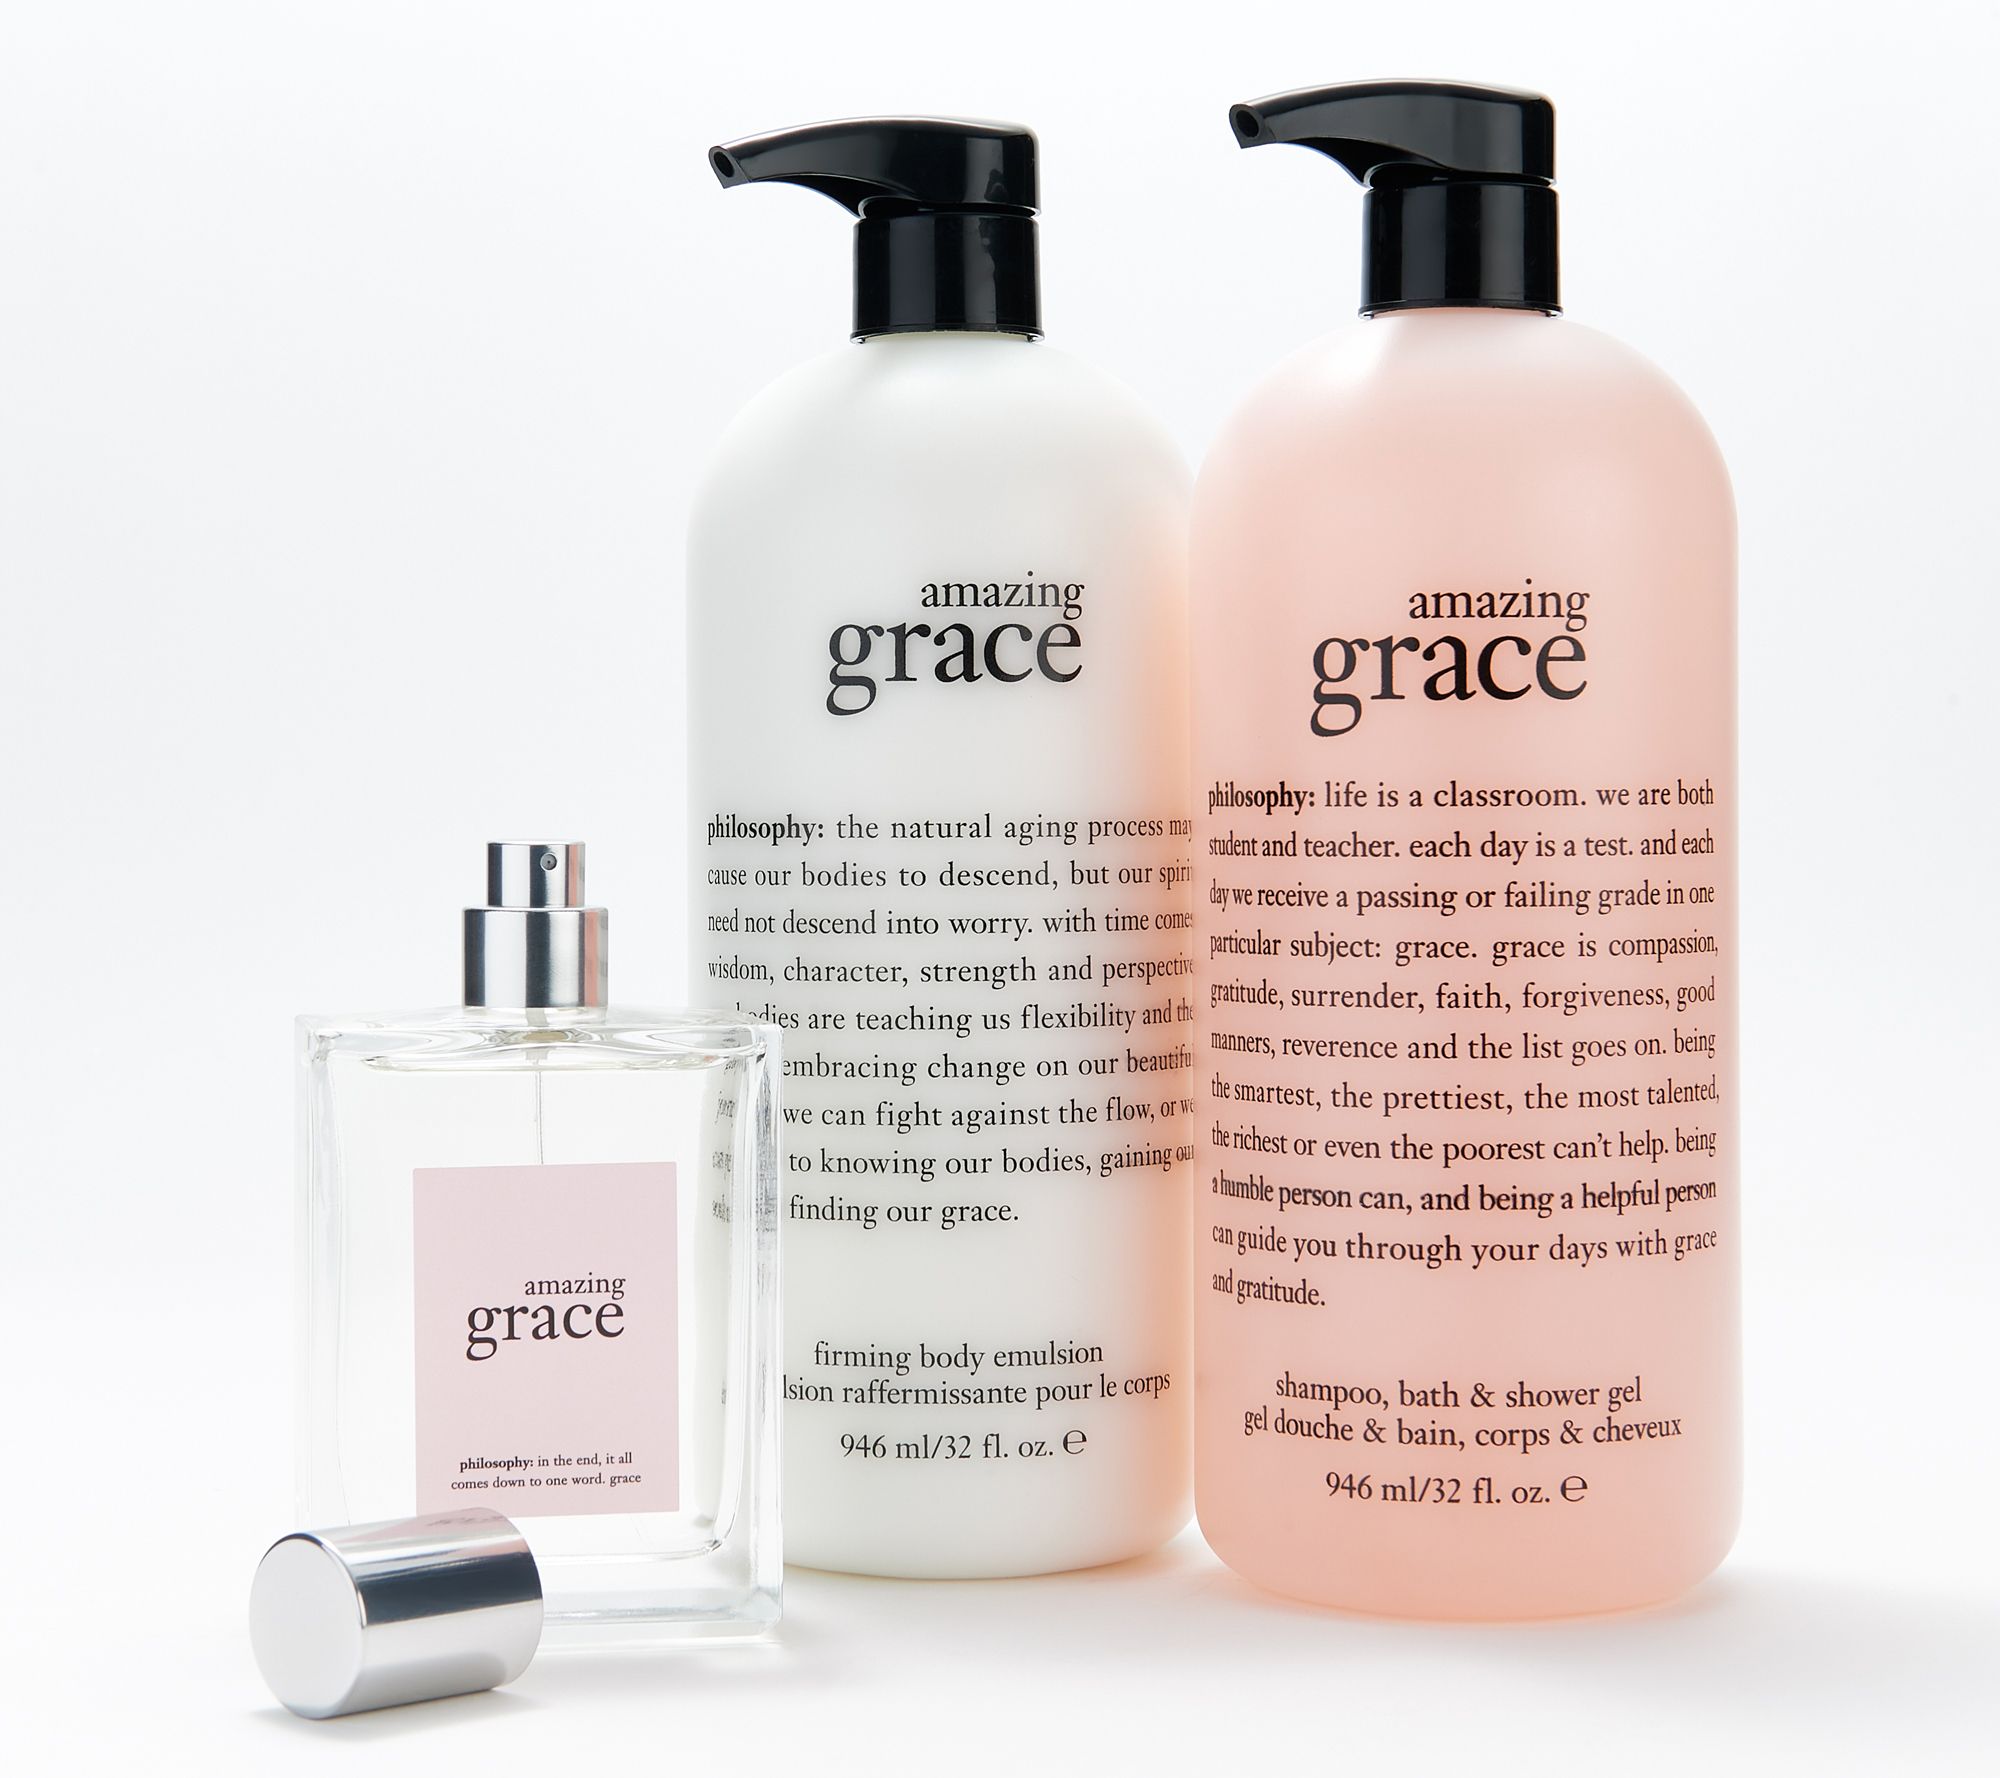 philosophy Amazing Grace Jasmine Shampoo, Bath & Shower Gel at Von